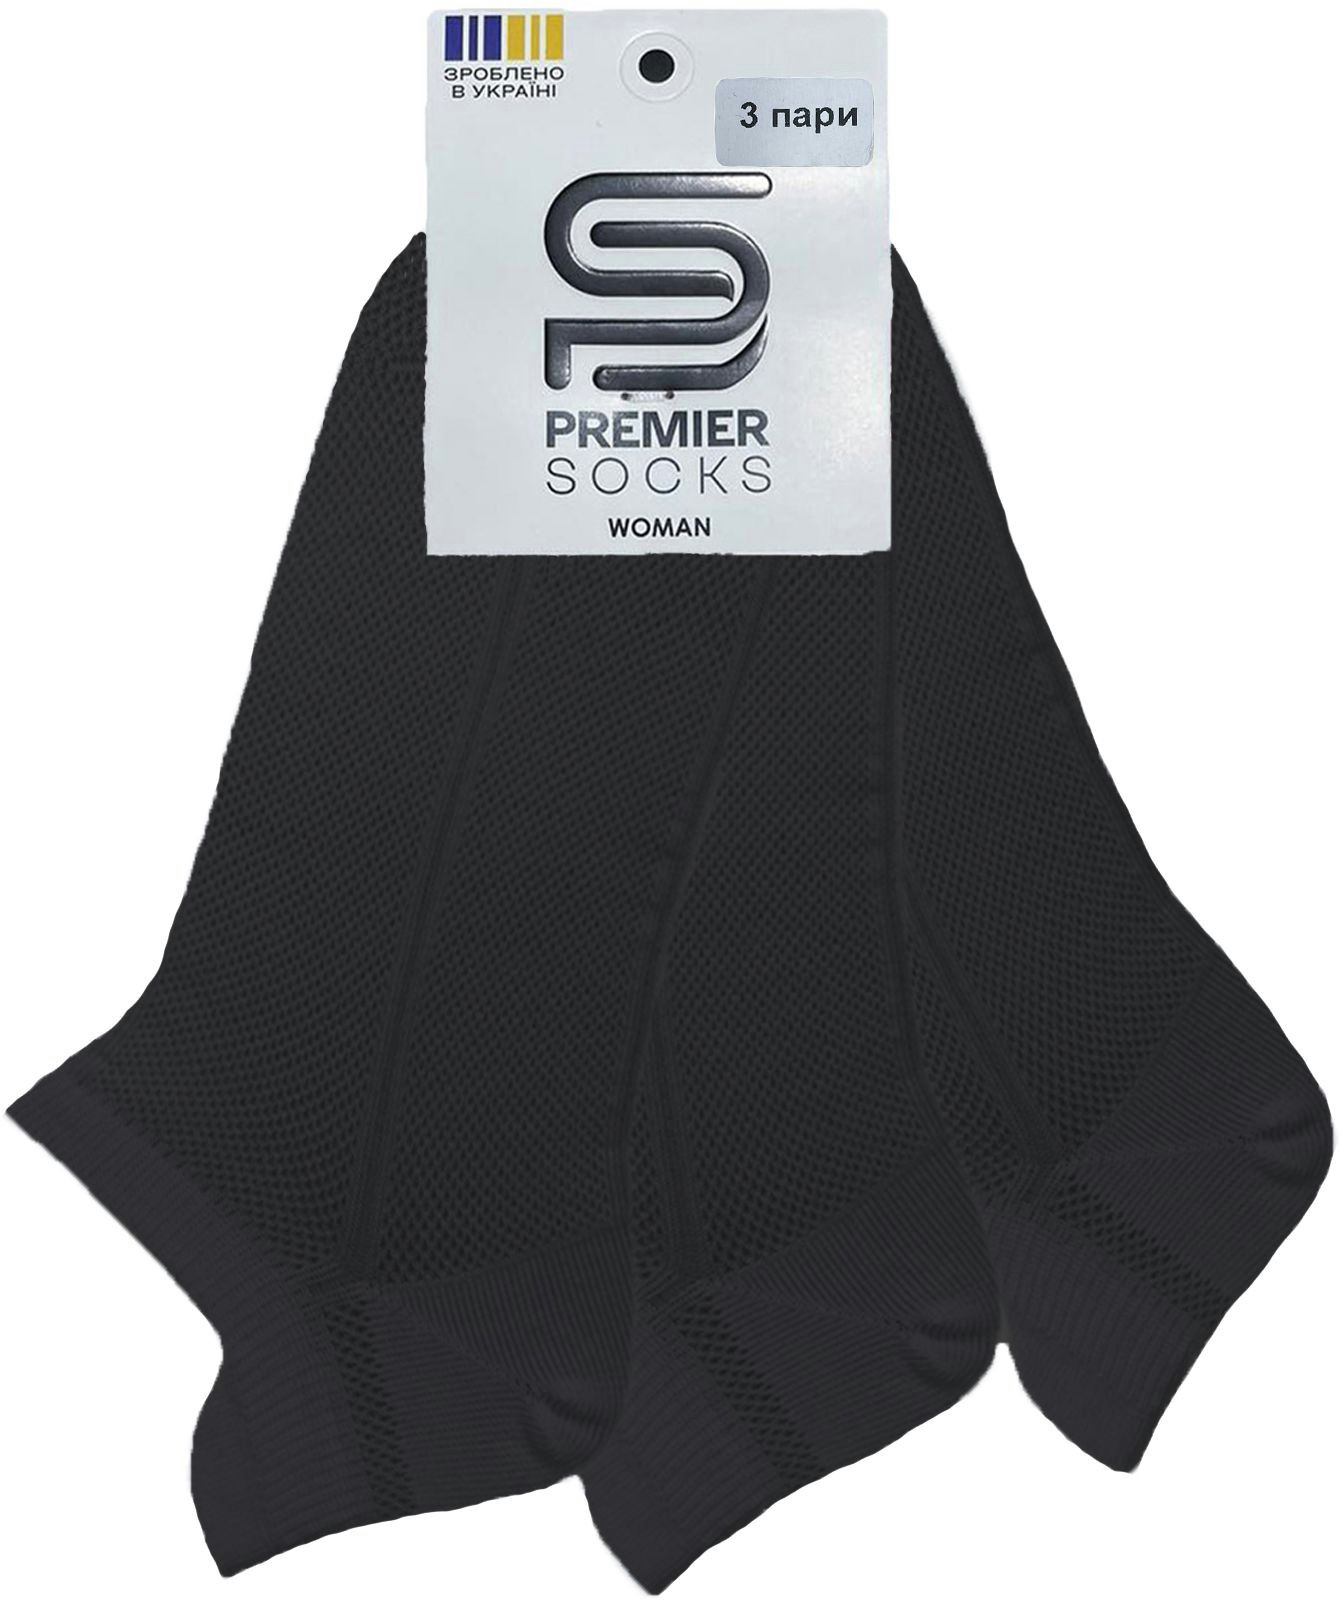 Набор носков женских Premier Socks 36-40 3 пары черные (4820163319254) фото 3